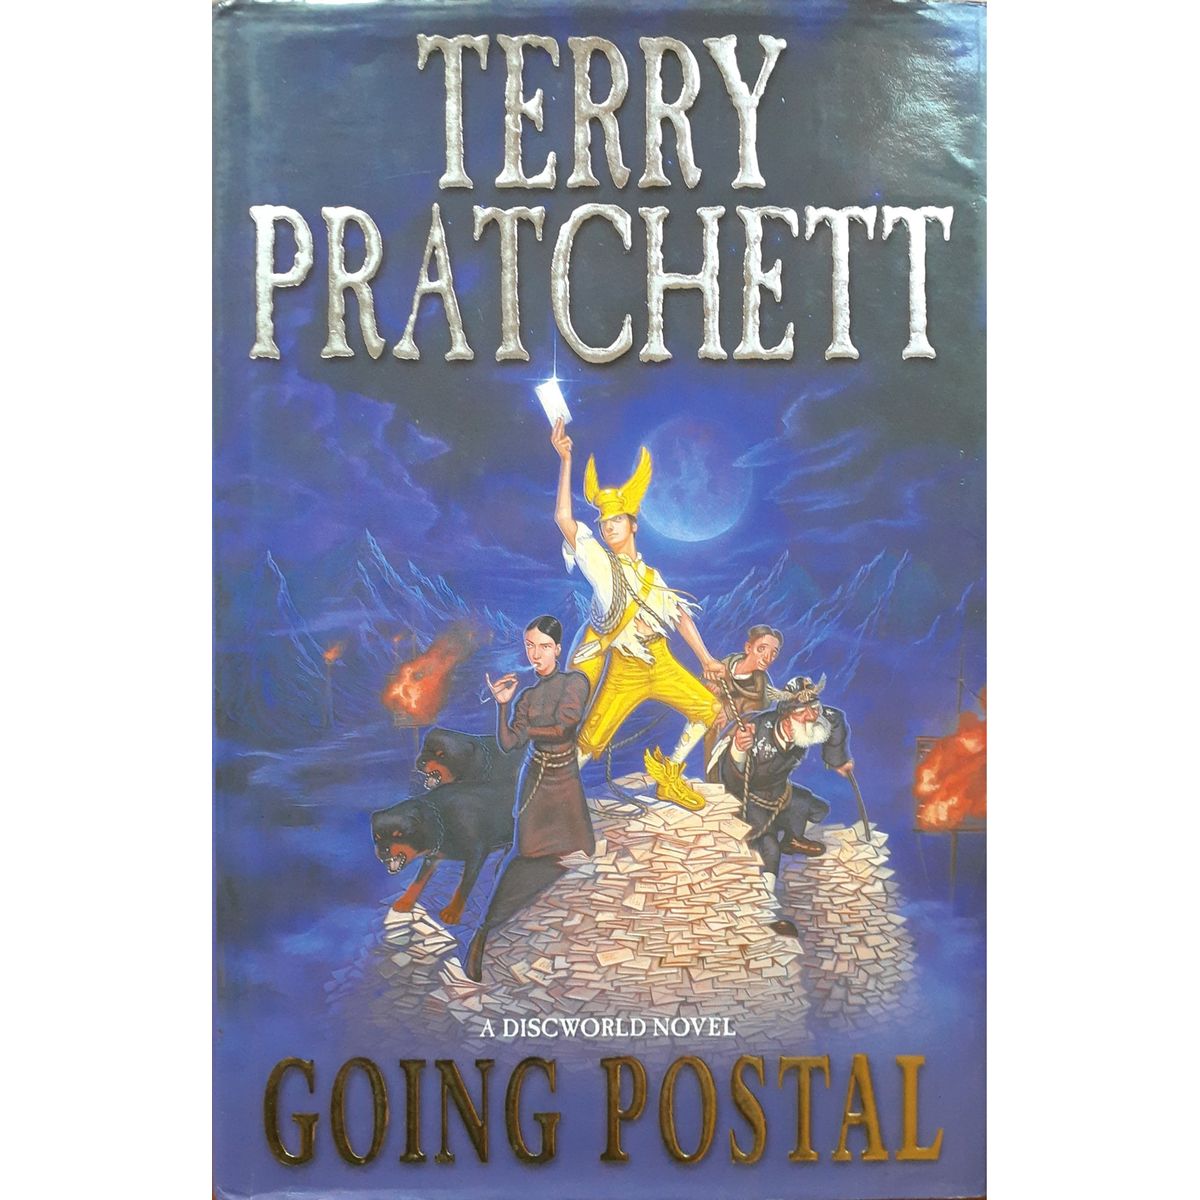 ISBN: 9780385603423 / 0385603428 - Going Postal: A Discworld Novel by Terry Pratchett [2004]